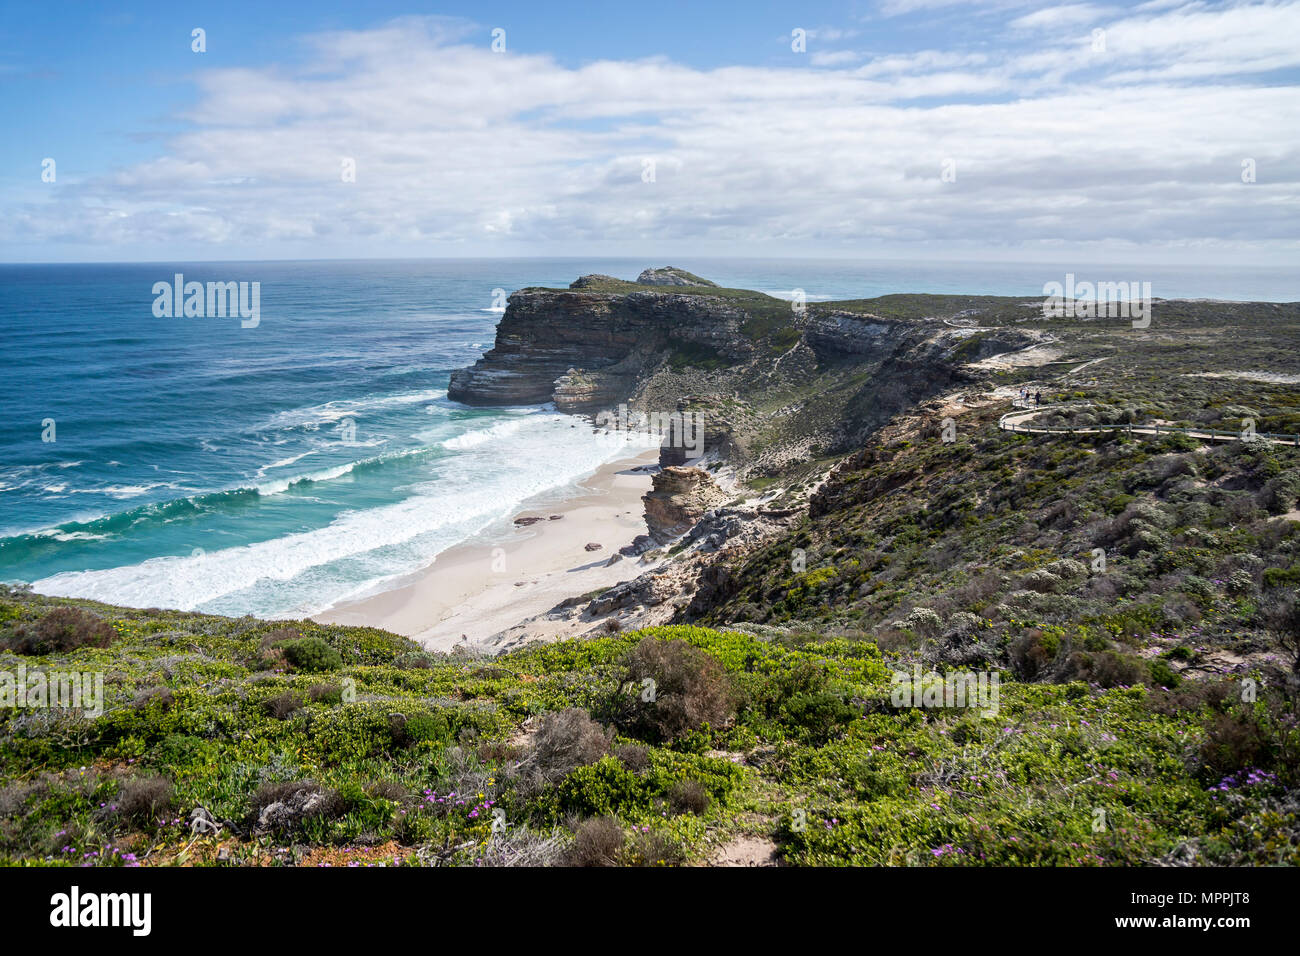 L'Afrique, Afrique du Sud, Western Cape, Cape of Good Hope, Cape Point vu de la plage Banque D'Images